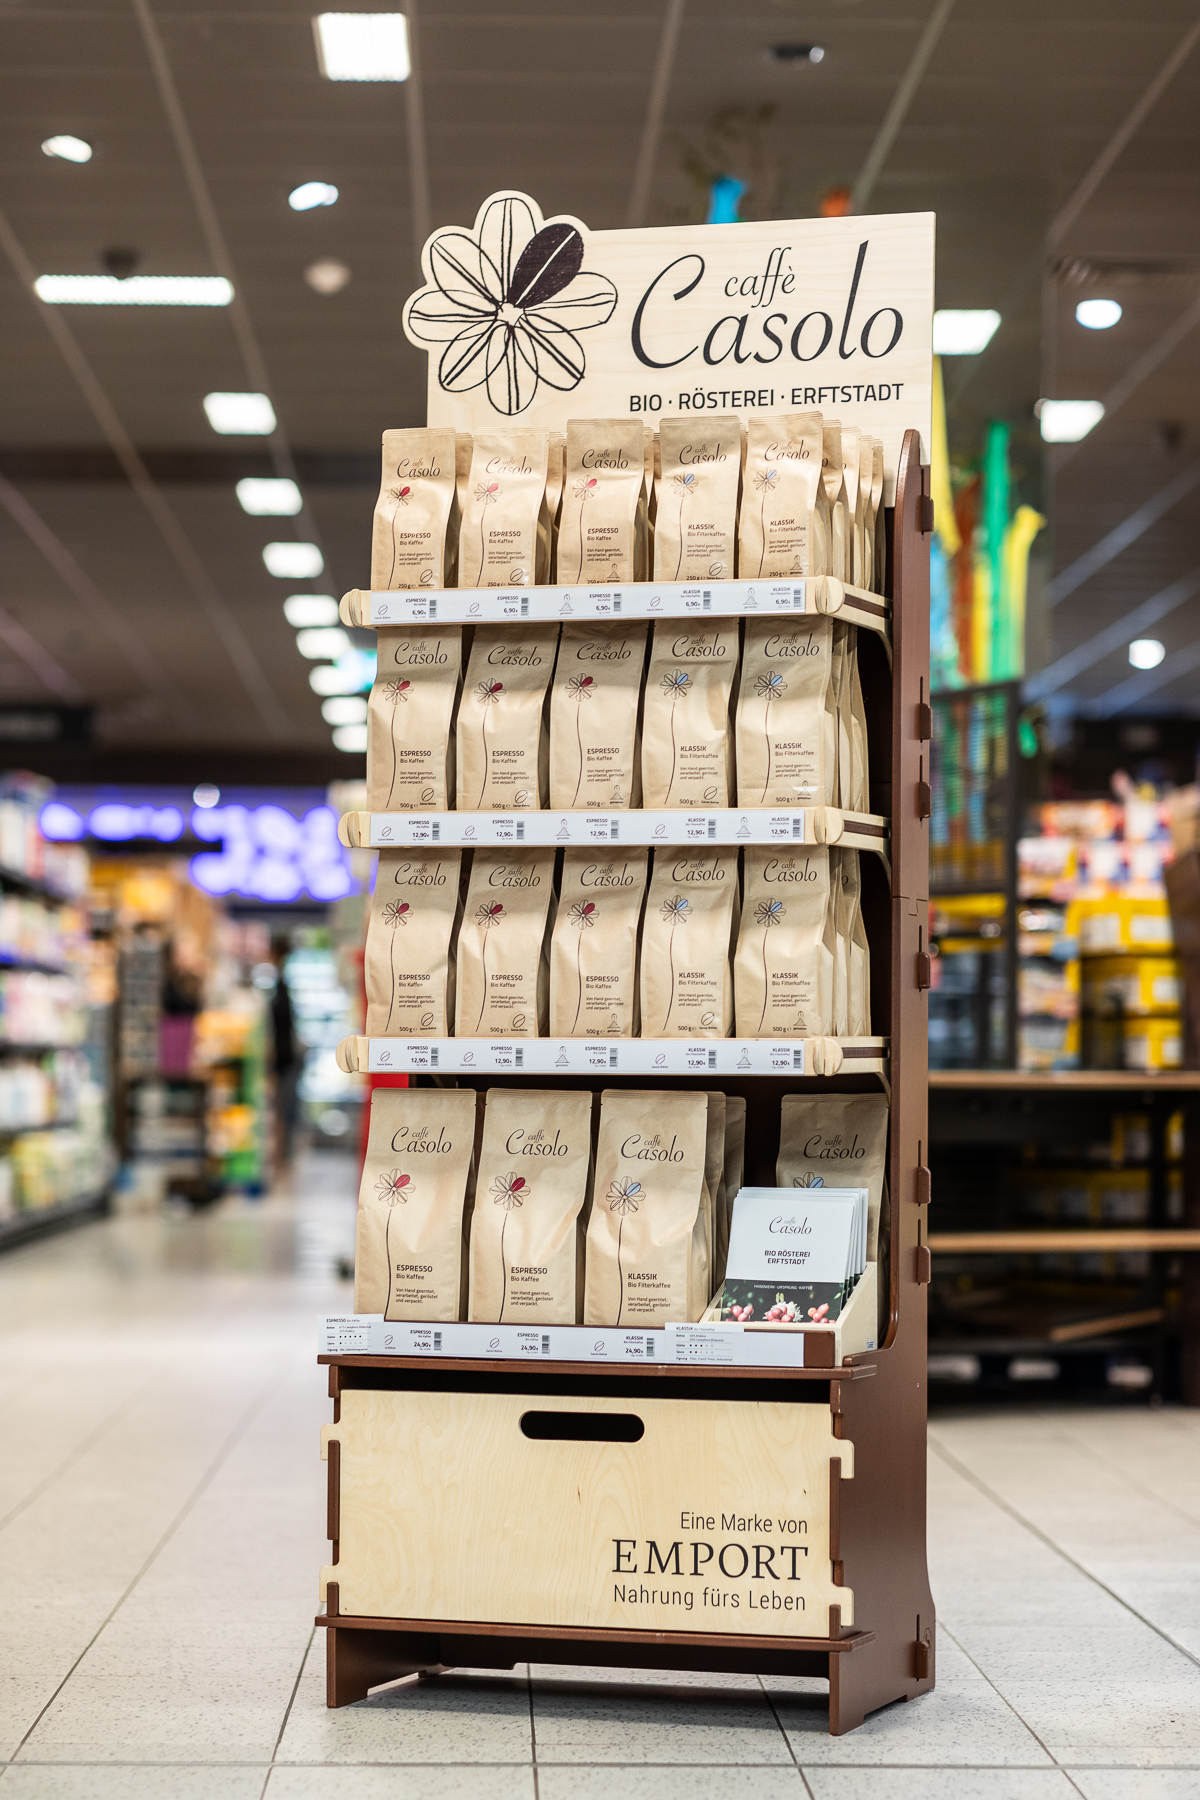 caffè Casolo – Kaffee aus Erftstadts Bio-Rösterei